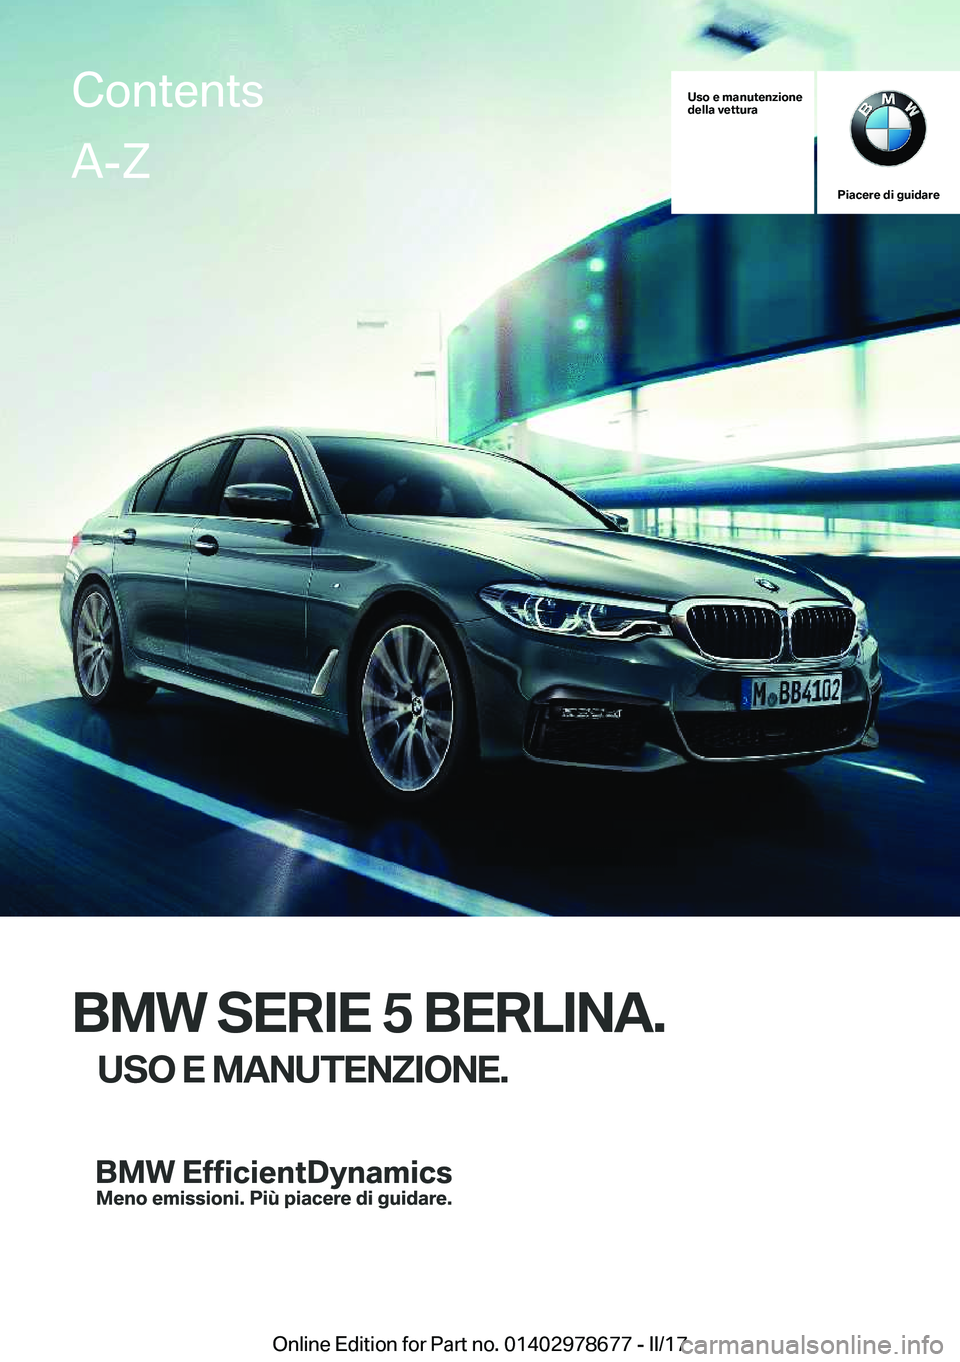 BMW 5 SERIES 2017  Libretti Di Uso E manutenzione (in Italian) �U�s�o��e��m�a�n�u�t�e�n�z�i�o�n�e
�d�e�l�l�a��v�e�t�t�u�r�a
�P�i�a�c�e�r�e��d�i��g�u�i�d�a�r�e
�B�M�W��S�E�R�I�E��5��B�E�R�L�I�N�A�.
�U�S�O��E��M�A�N�U�T�E�N�Z�I�O�N�E�.
�C�o�n�t�e�n�t�s�A�